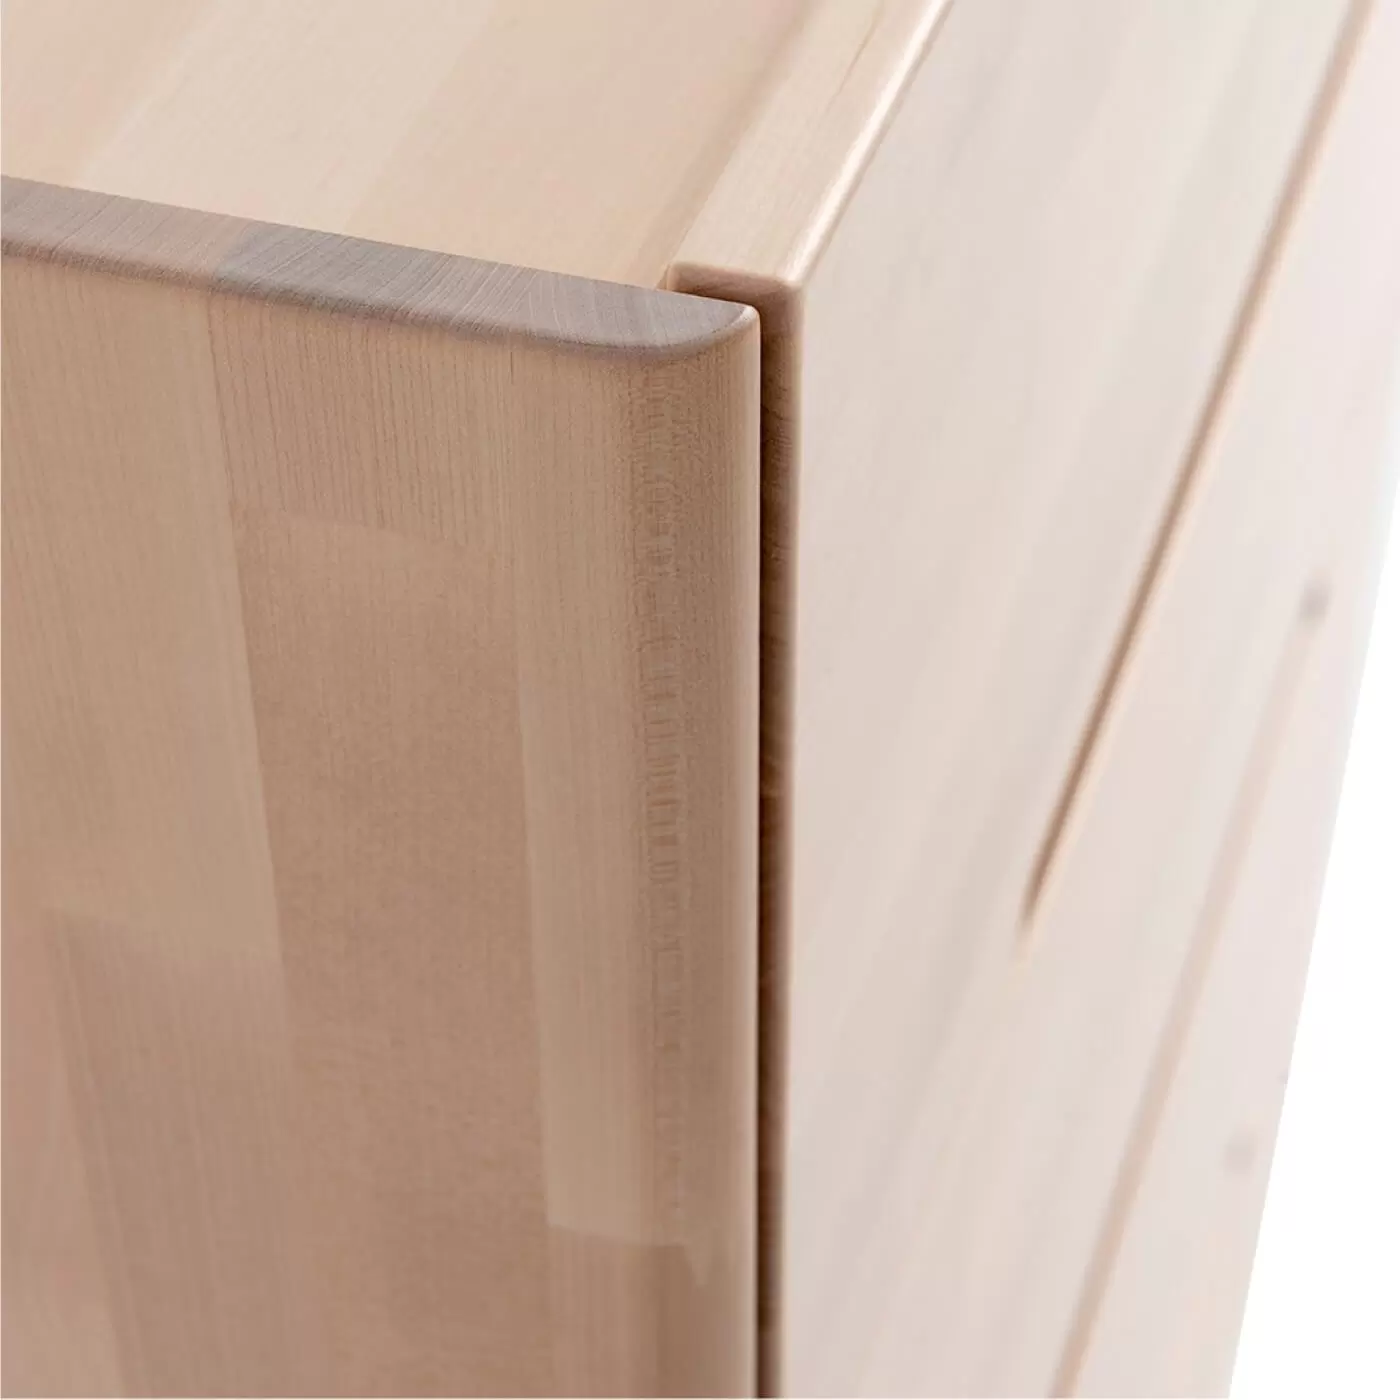 Komoda drewniana nowoczesna LENNU. Widok z boku na szuflady bez wystających uchwytów z litego drewna brzozy skandynawskiej